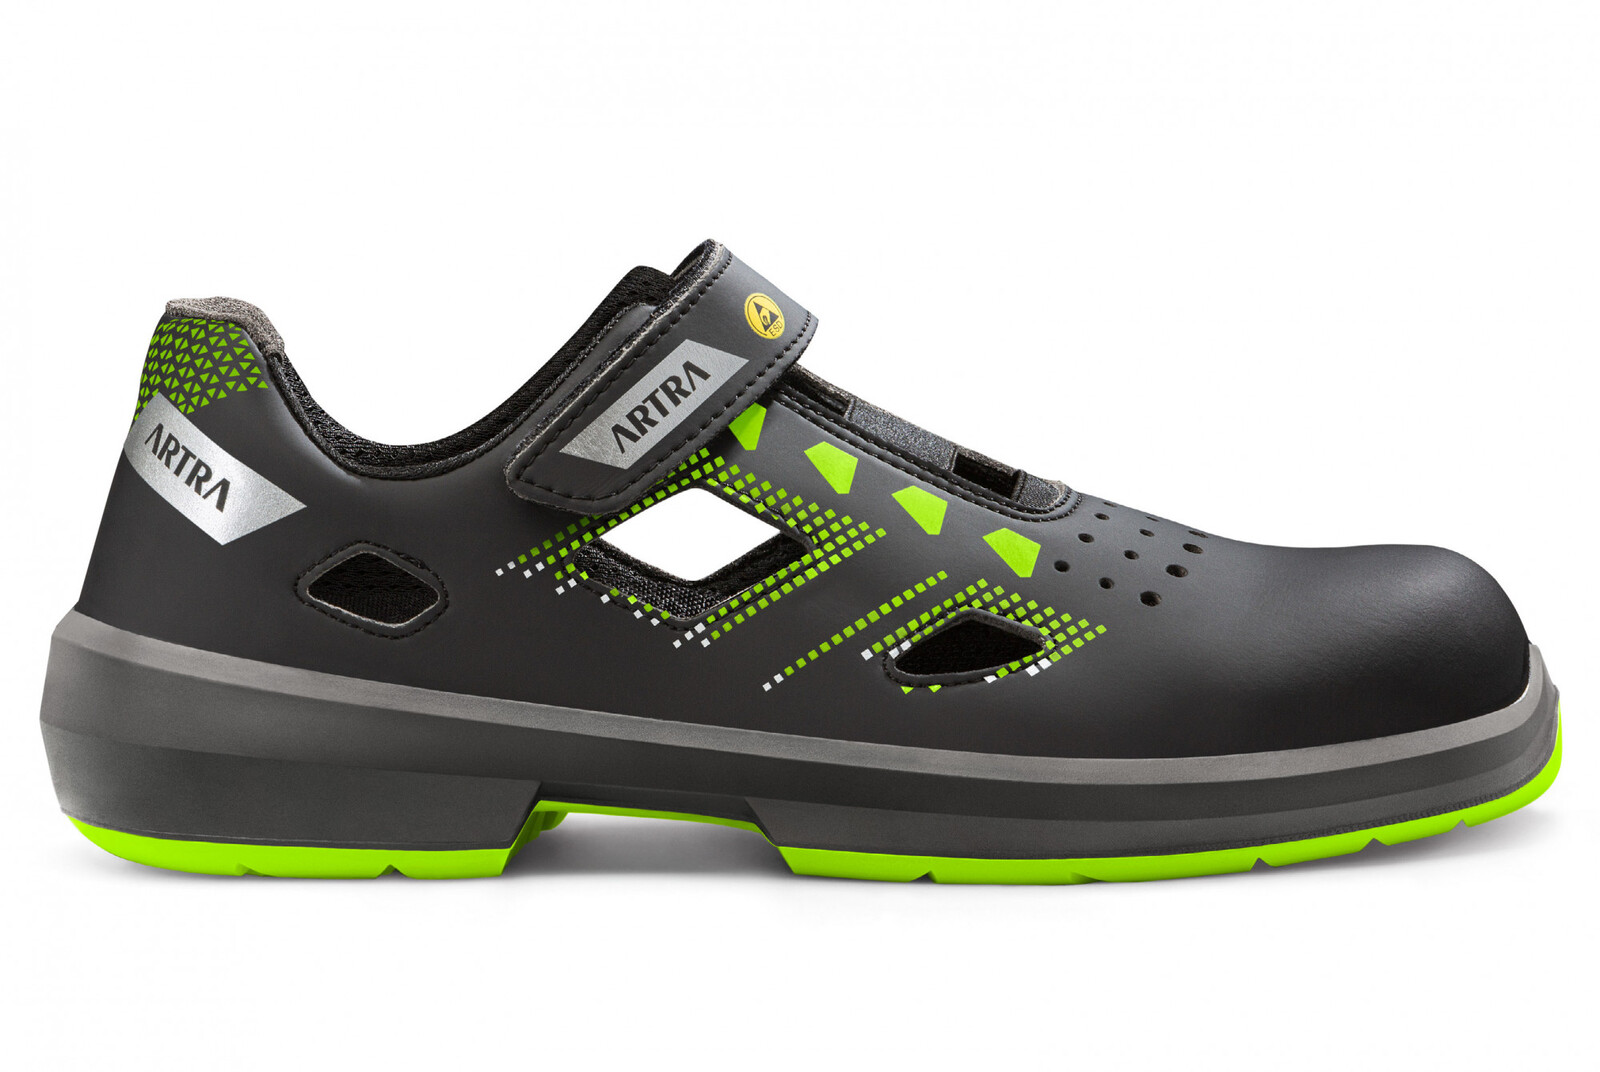 Bezpečnostné sandále Artra Arzo 805 678080 S1 SRC ESD MF - veľkosť: 43, farba: čierna/zelená